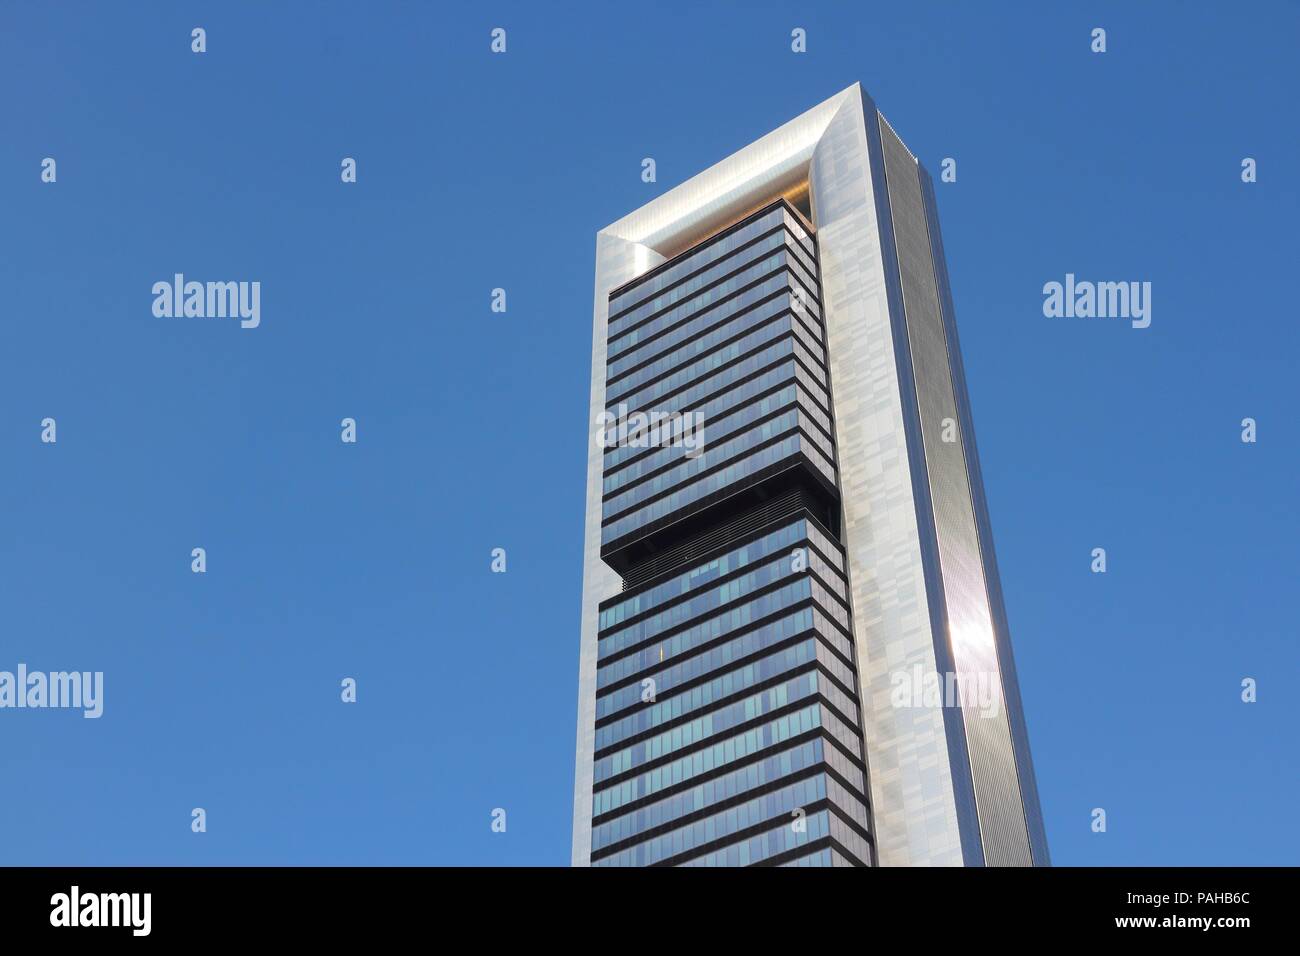 Caja madrid fotografías e imágenes de alta resolución - Alamy